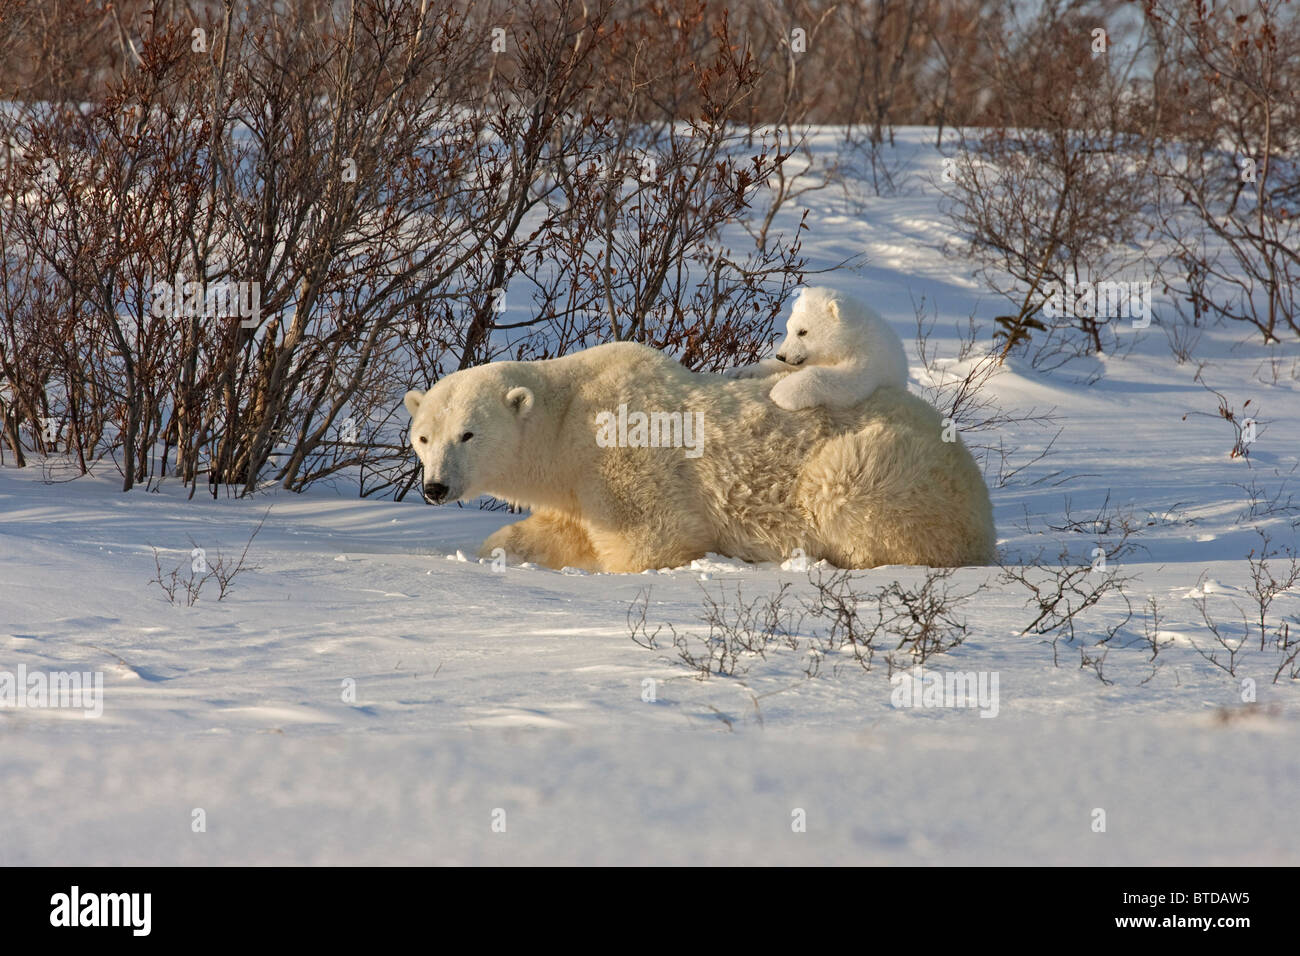 A 12- 14 settimana orso polare (Ursus maritimus) si rilassa sulla sua madre la schiena, Wapusk National Park, Manitoba, Canada, inverno Foto Stock